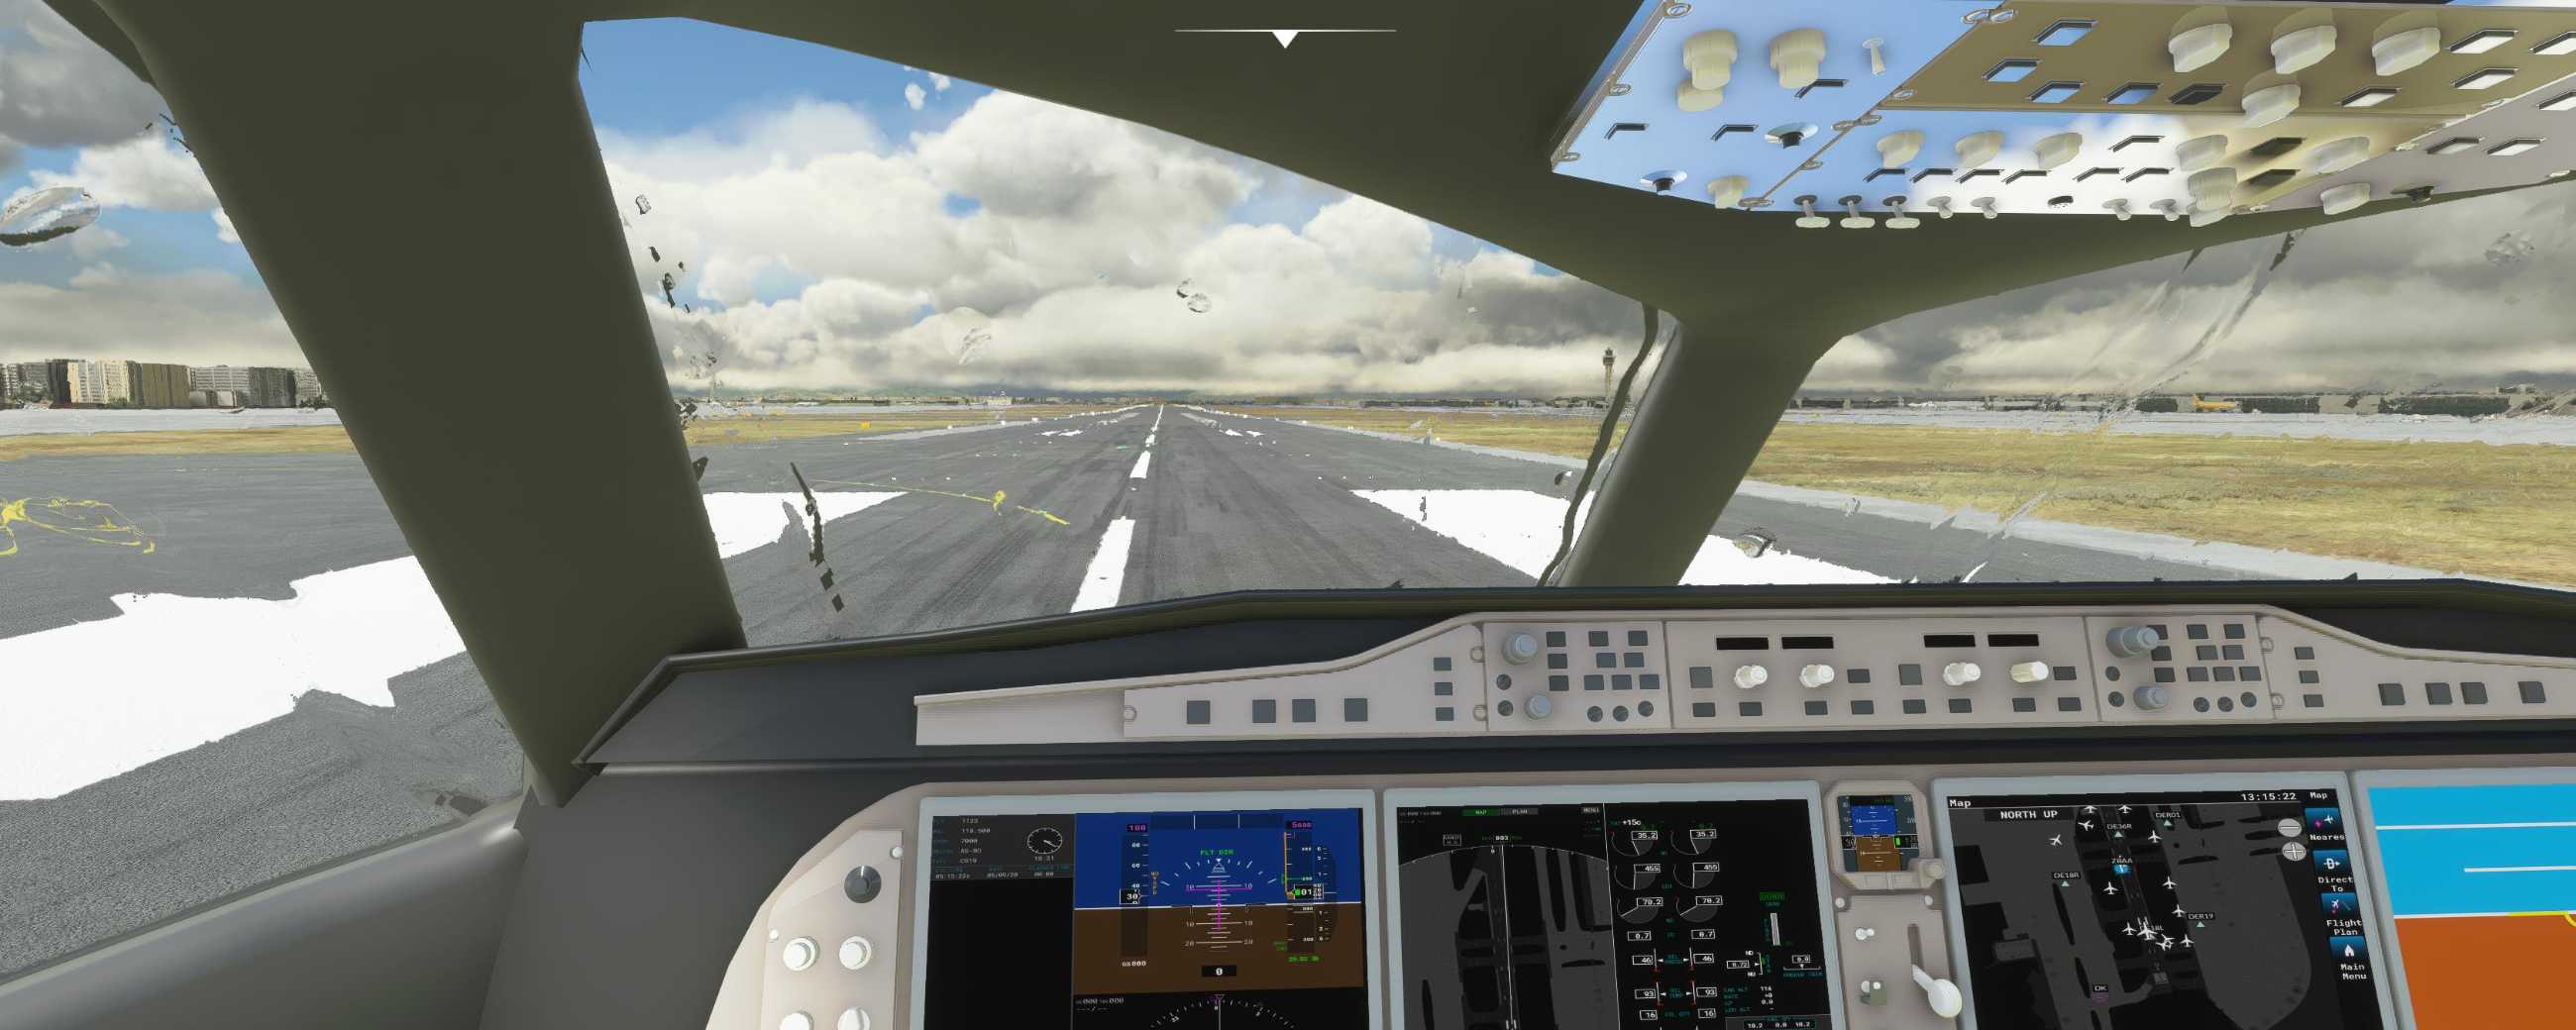 FYCYC-C919 国产大飞机机模 微软模拟飞行演示-7983 